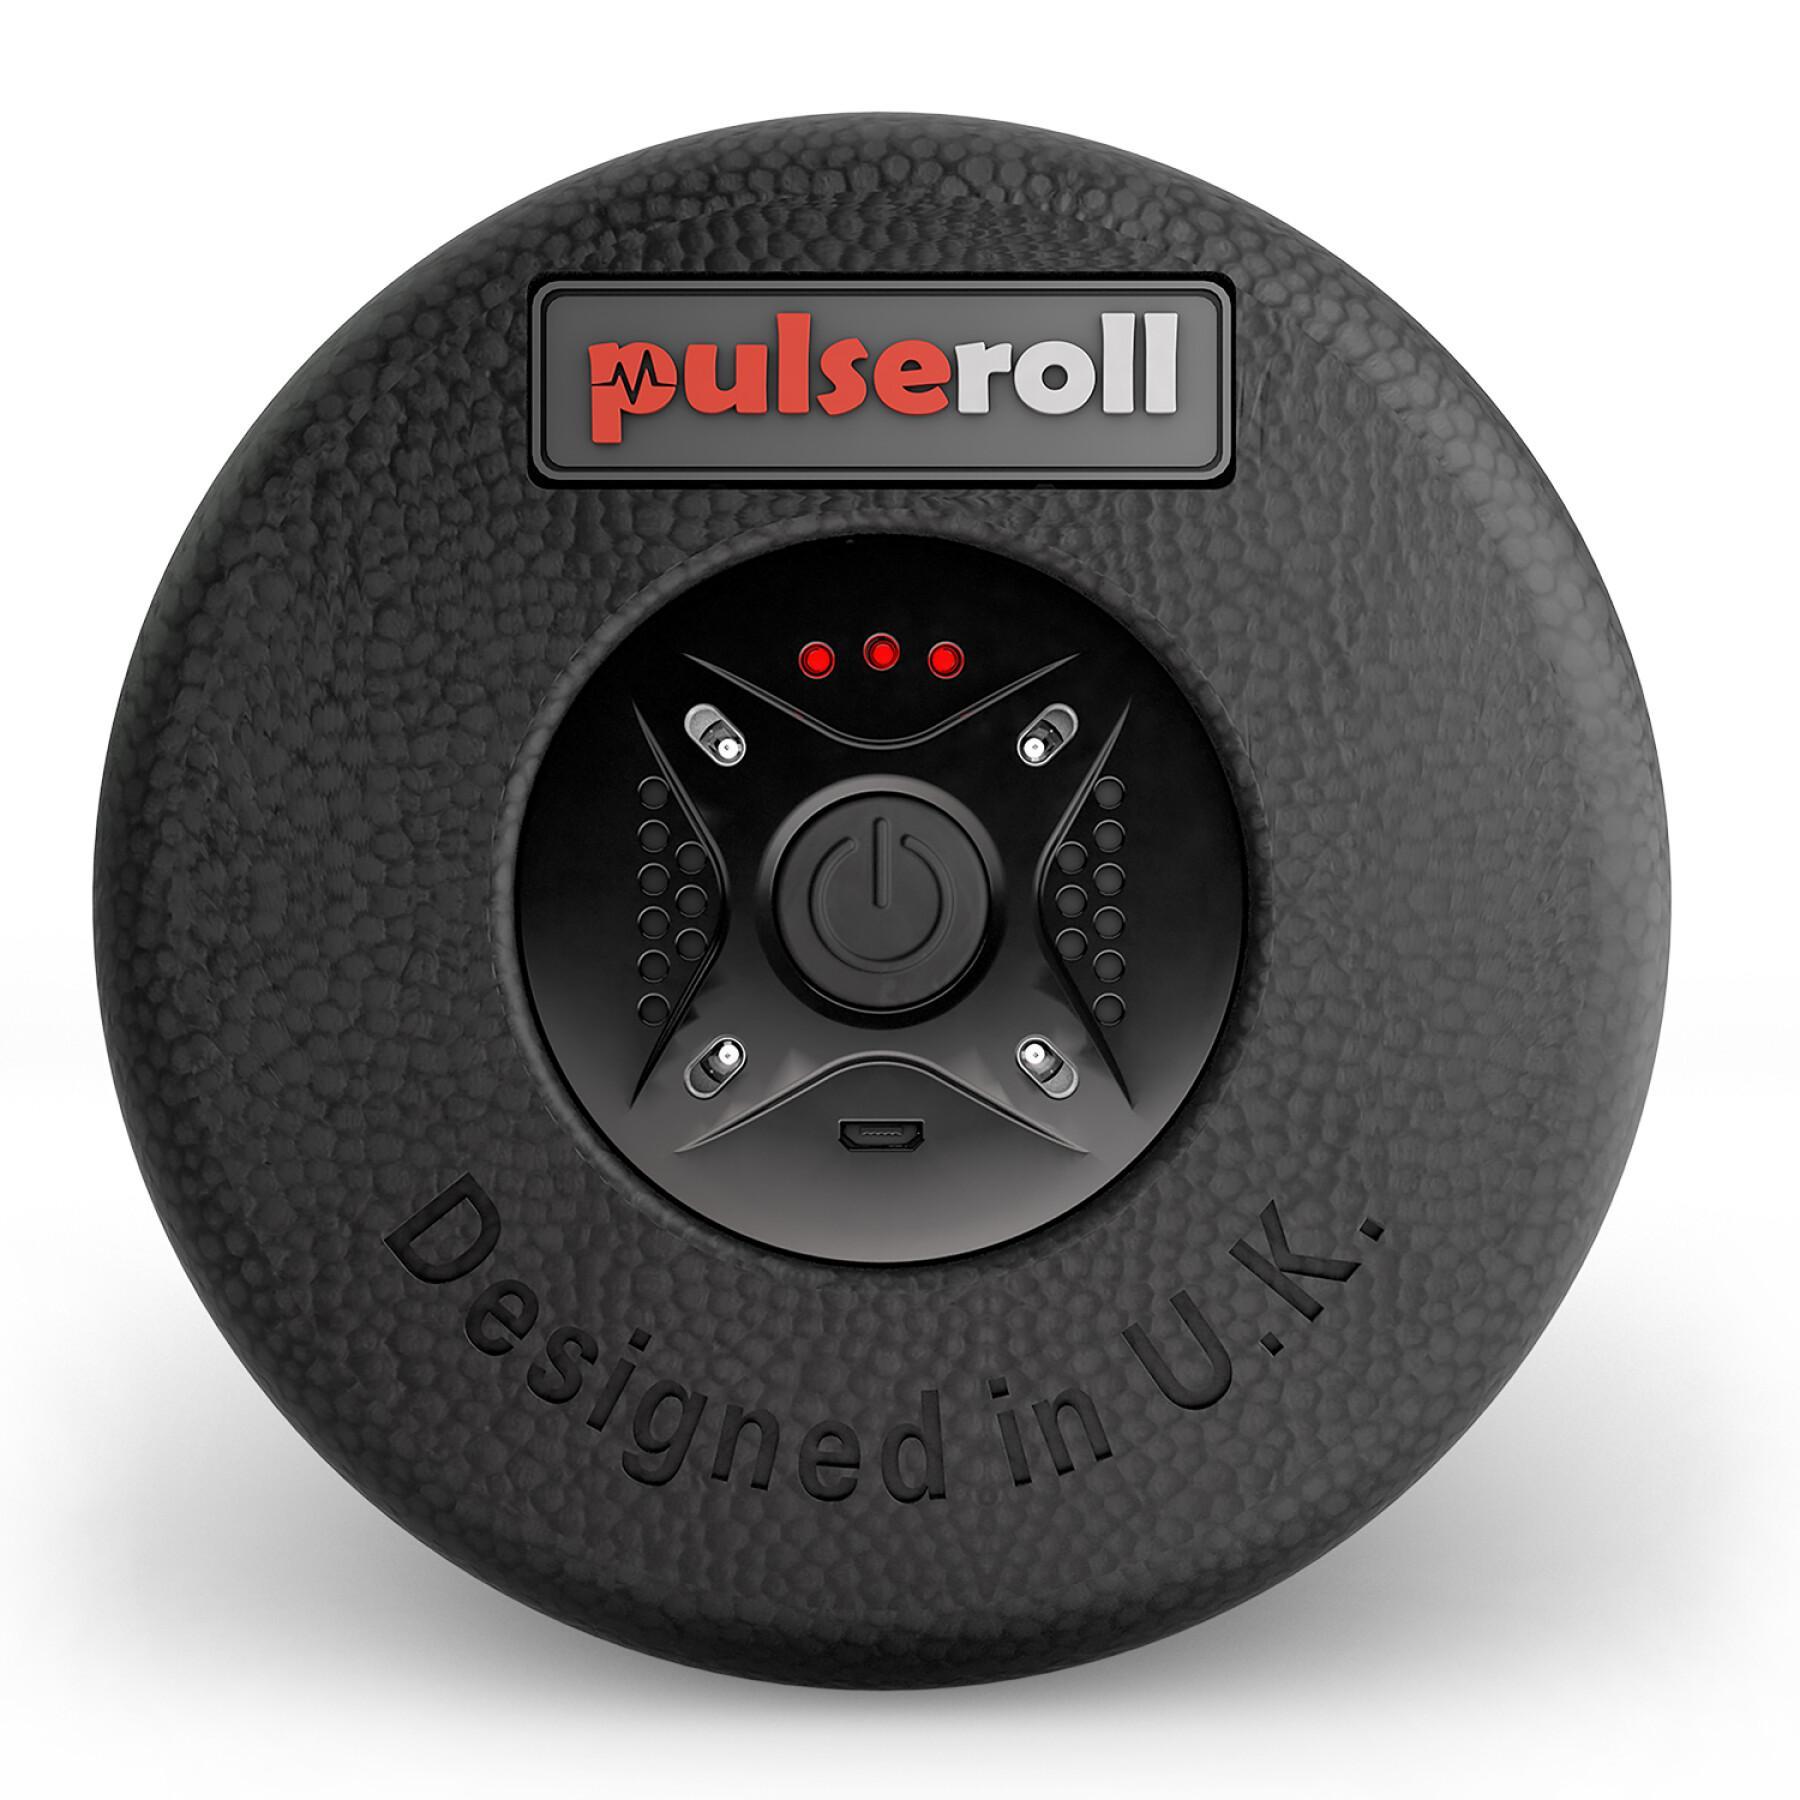 Vibrating massage roller Pulseroll Classique